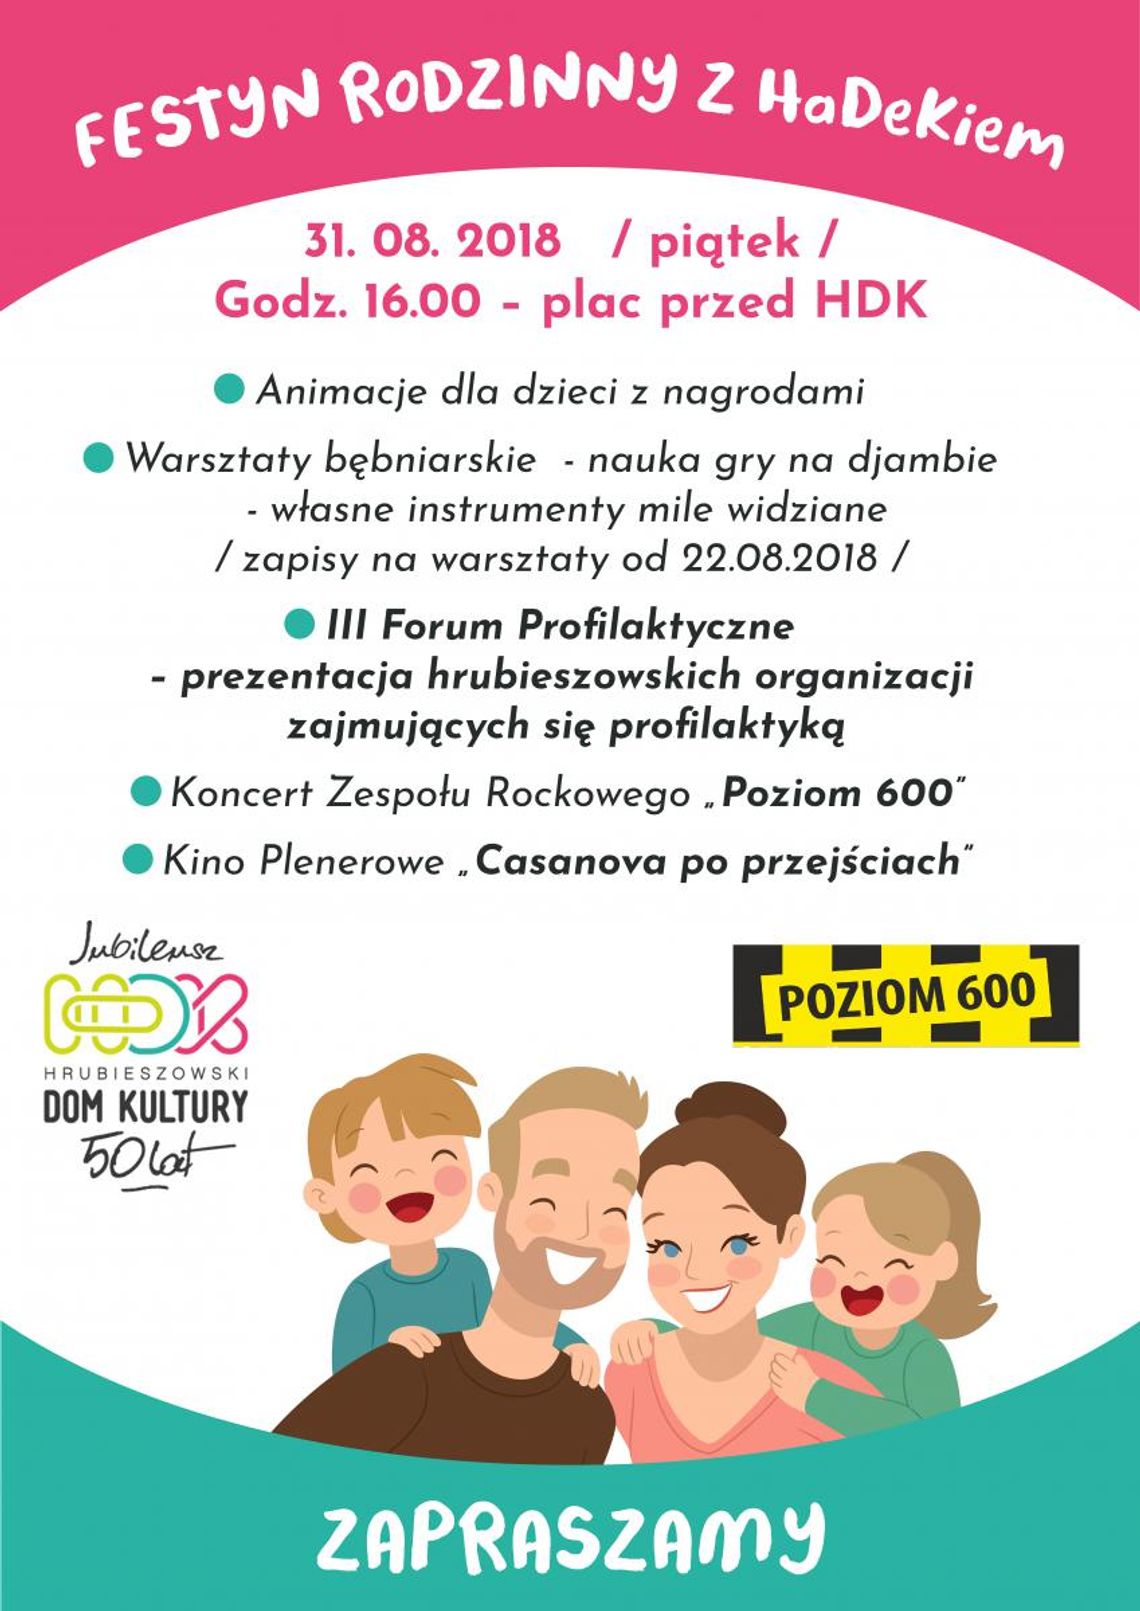 Hrubieszów: Rodzinny piknik z HDK na zakończenie wakacji